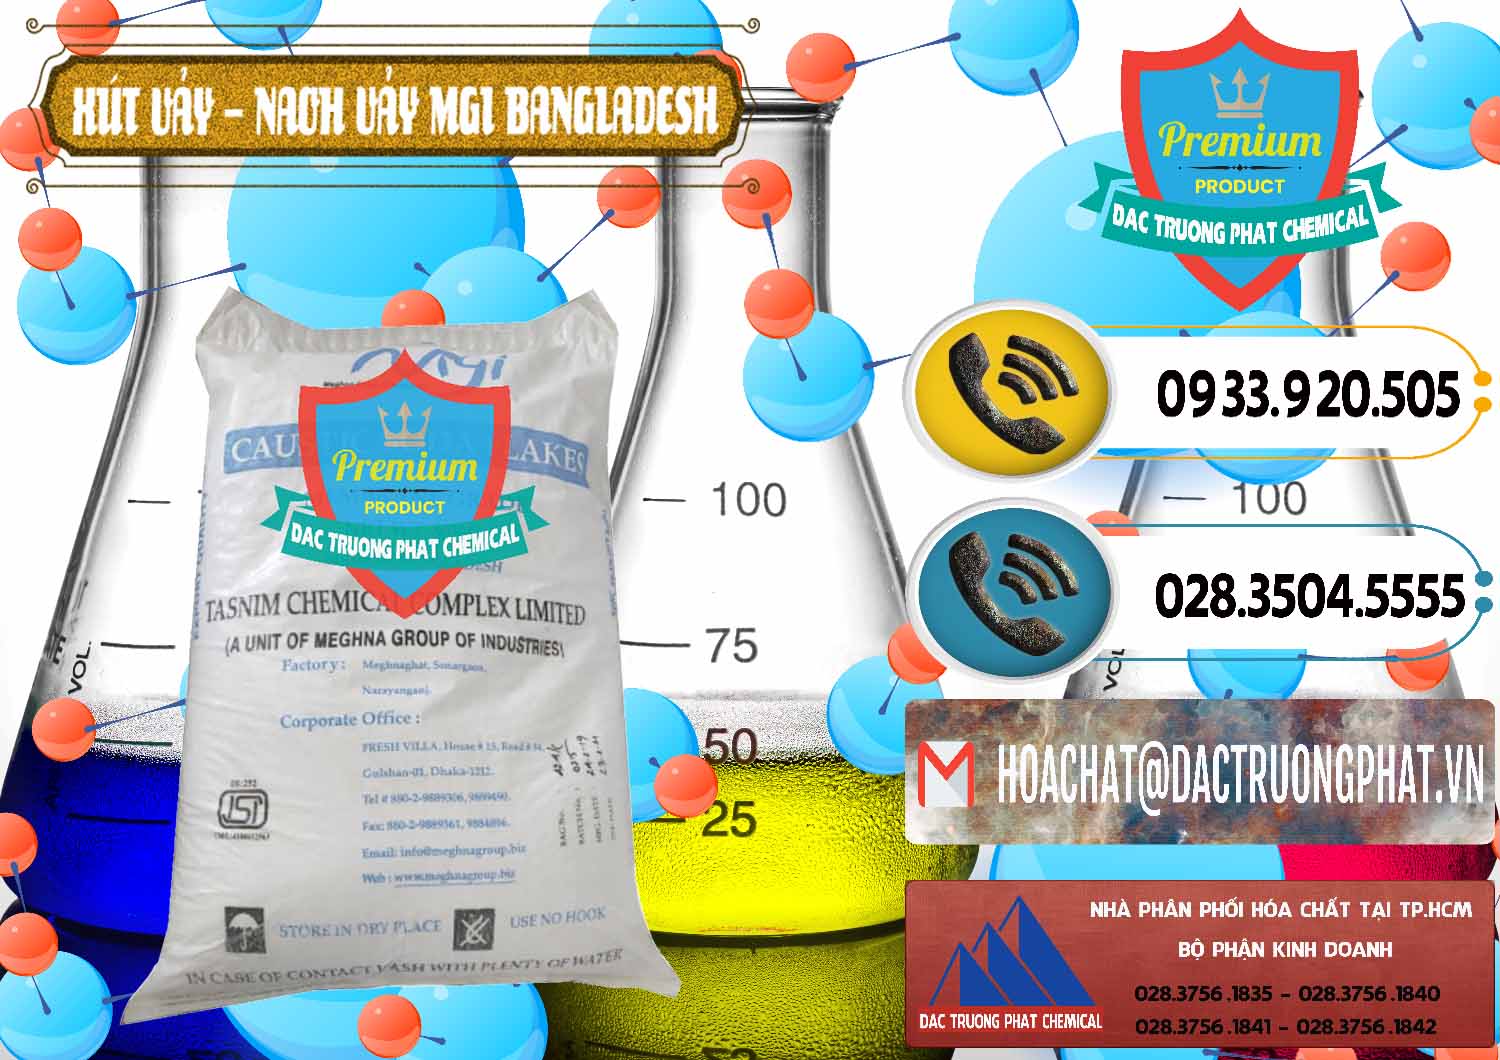 Đơn vị cung ứng ( bán ) Xút Vảy - NaOH Vảy 99% MGI Bangladesh - 0274 - Cty cung cấp - phân phối hóa chất tại TP.HCM - hoachatdetnhuom.vn